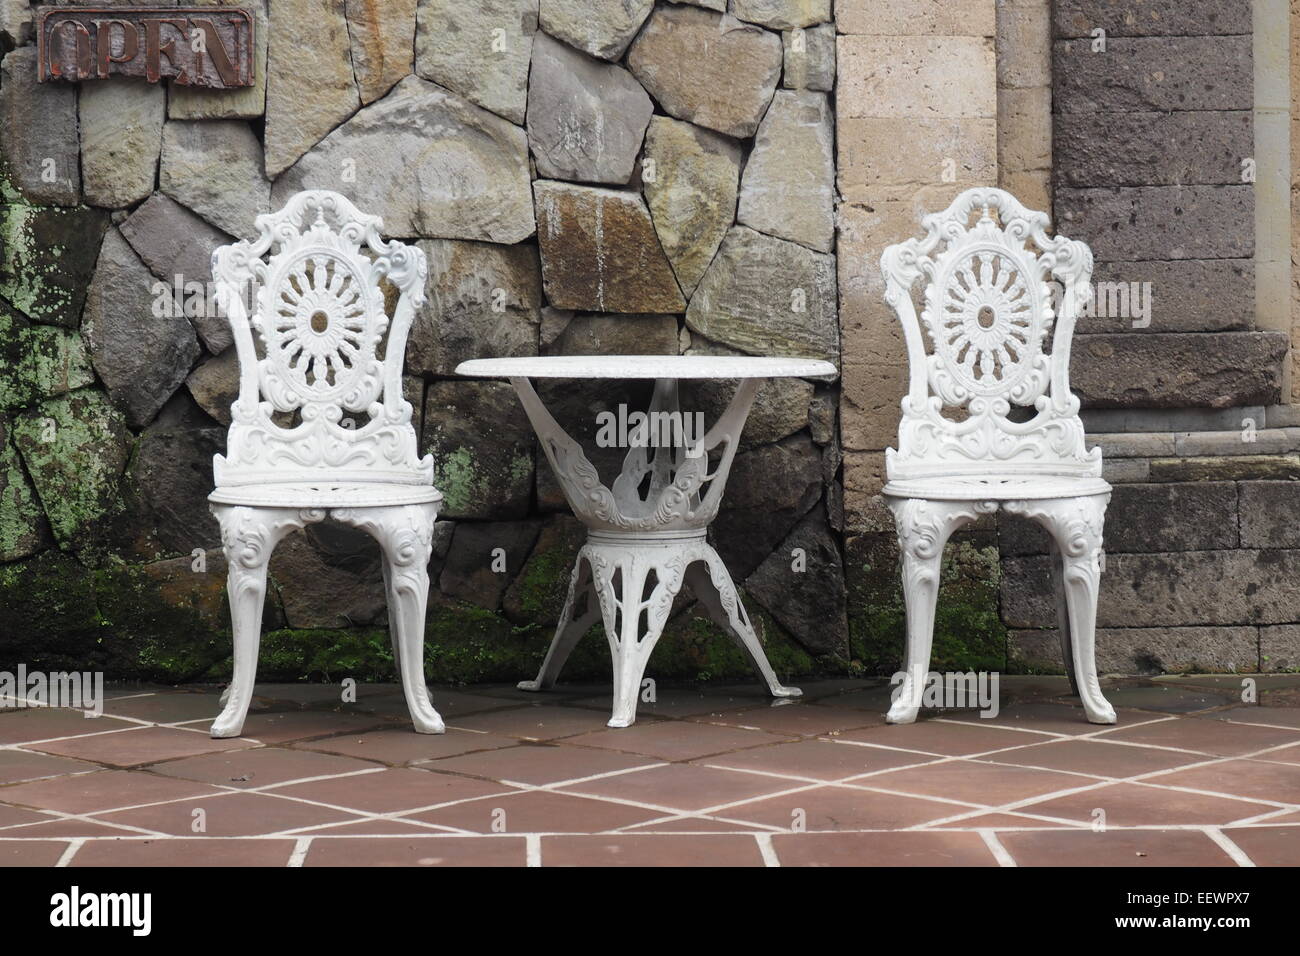 Al aire libre, de hierro fundido pintado blanco una mesa y dos sillas. Foto de stock